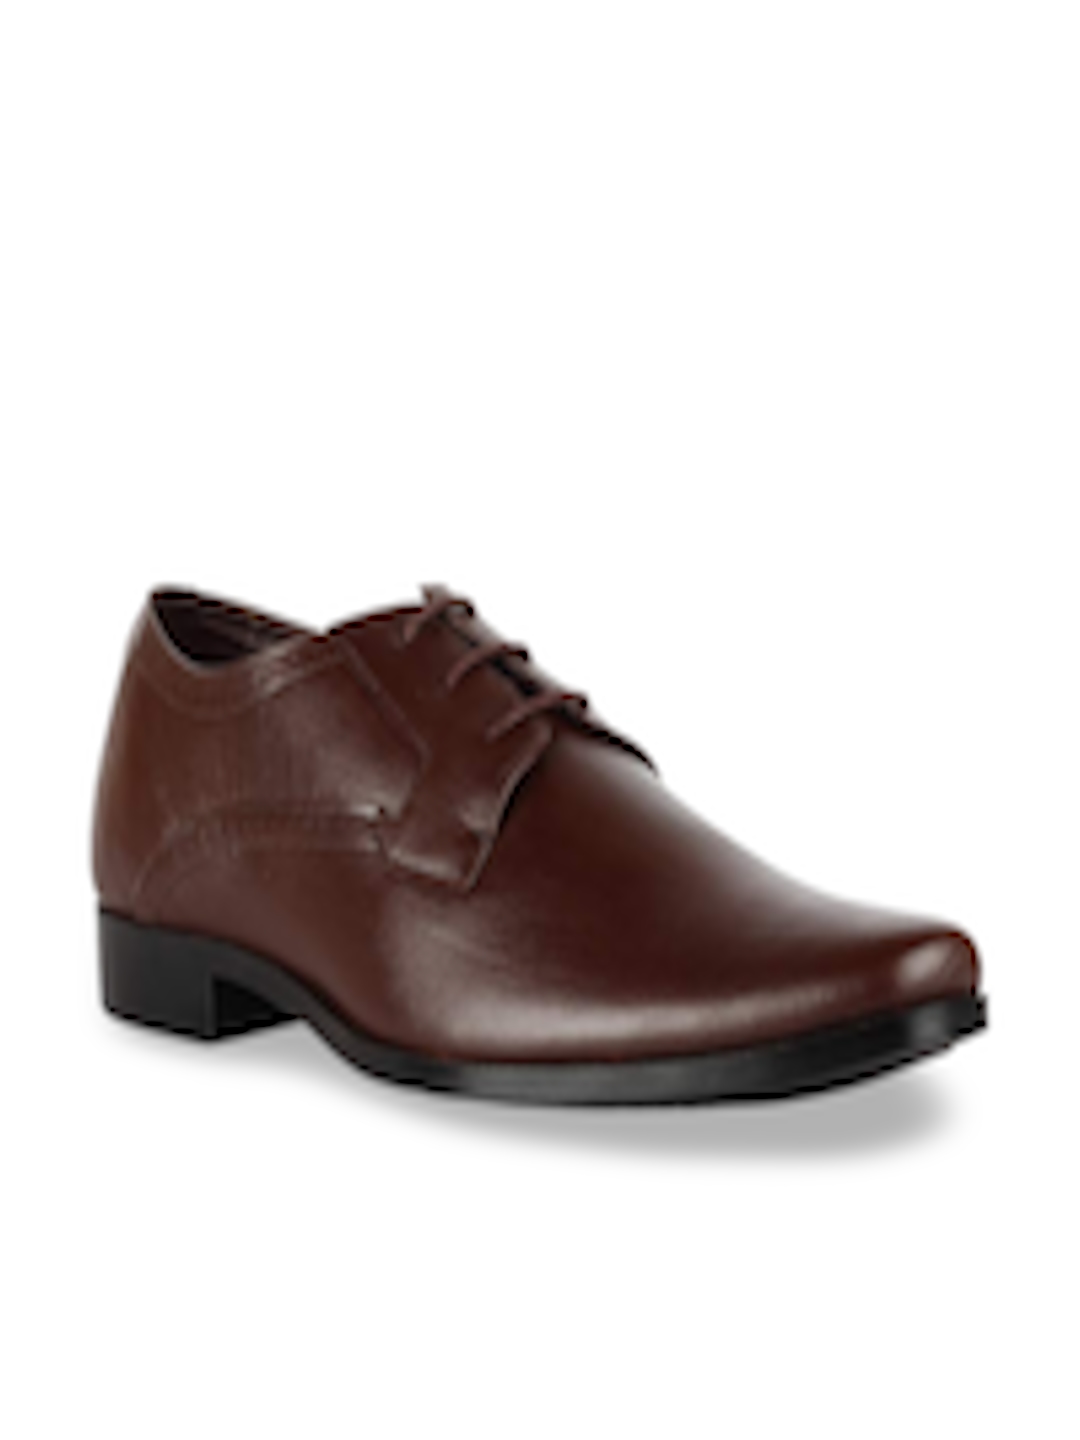 Buy Franco Leone Men Brown Solid Leather Formal Derbys - Formal Shoes ...